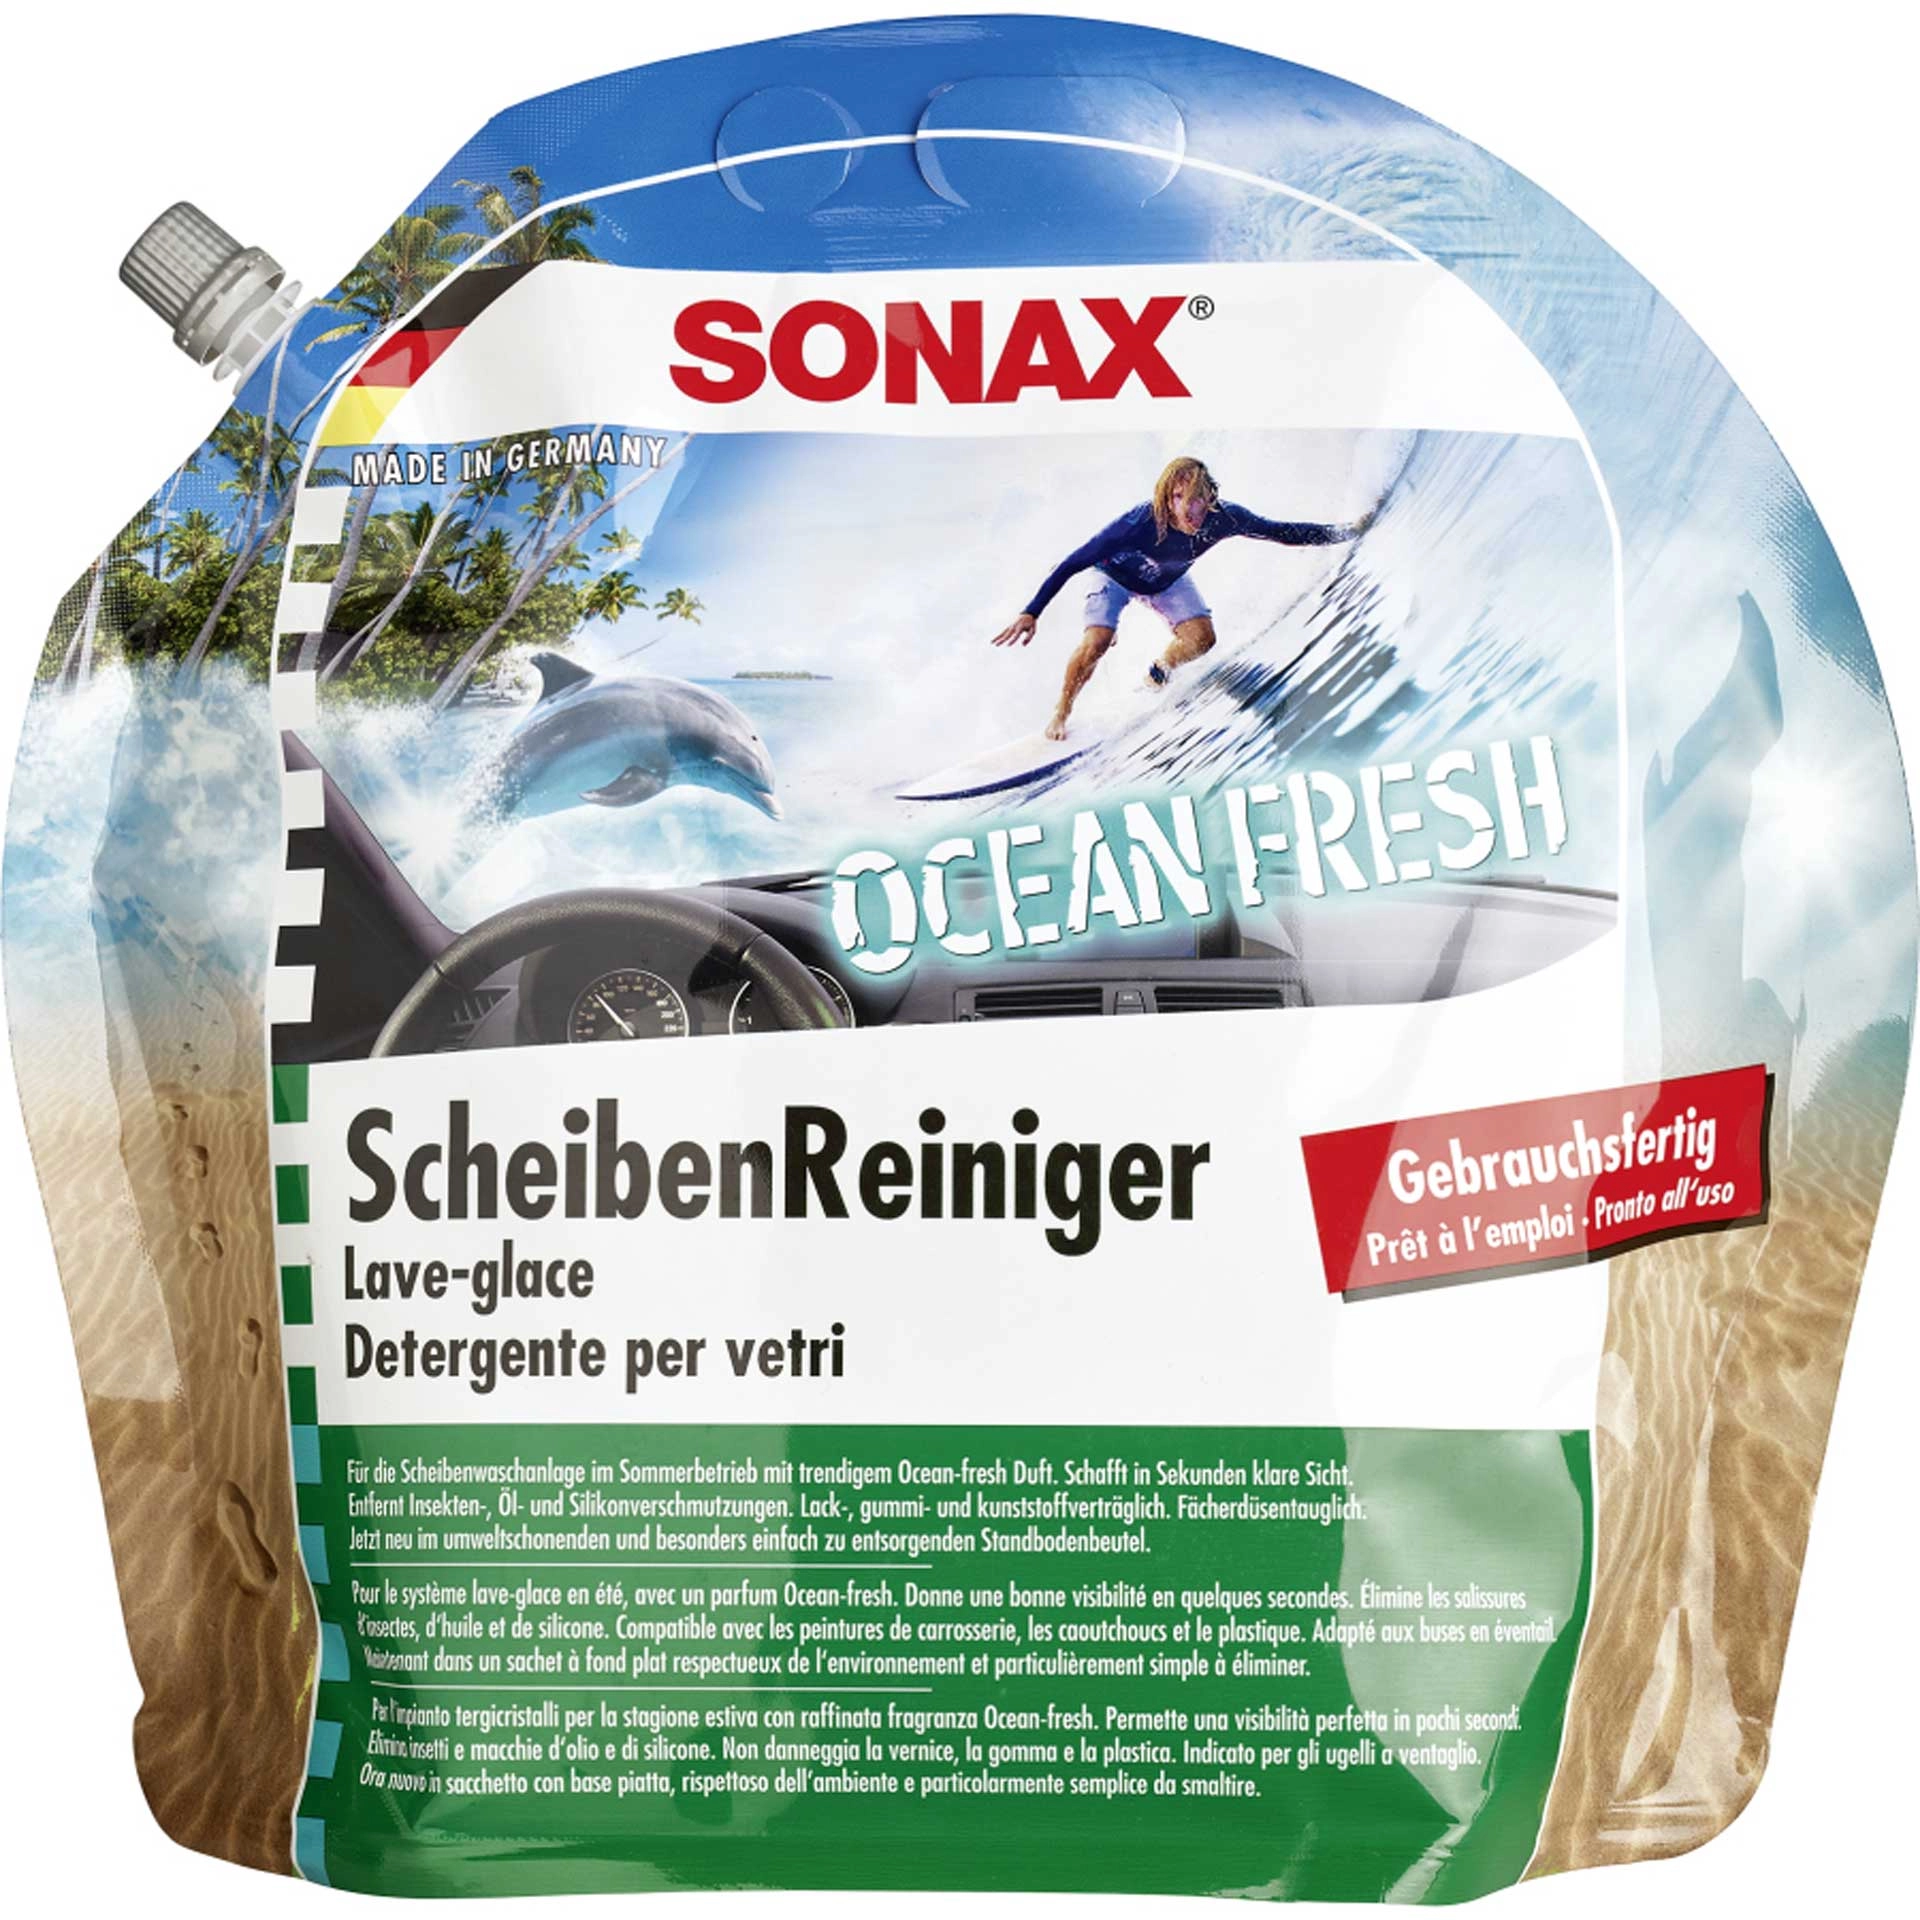 Sonax ScheibenReiniger Ocean-fresh gebrauchsfertig 3 l Standbodenbeutel 03884410